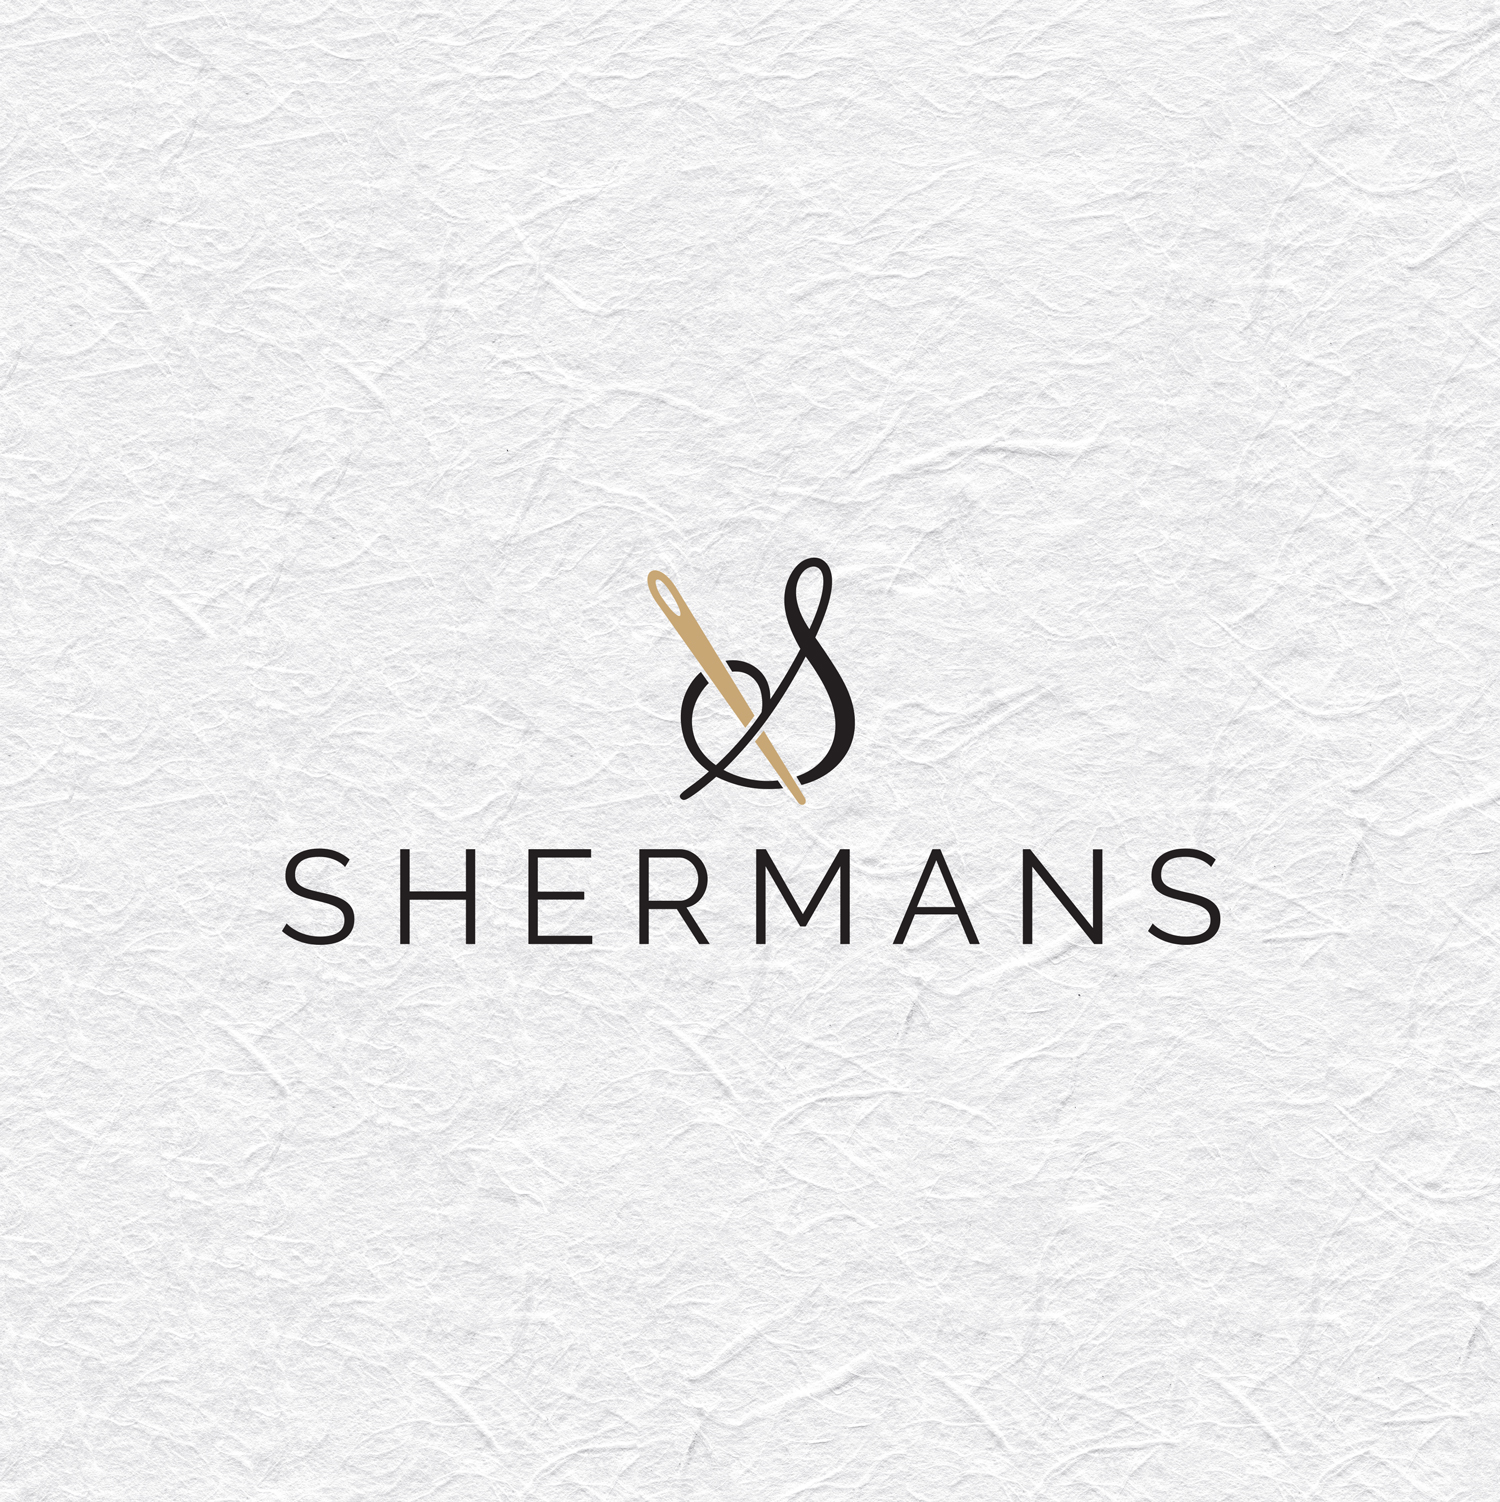 Dizajn logotipa za tvrtku Shermans. Shermans se bavi proizvodnjom odjeće te time i sami elegantni logo (igla i konac) odražava tu djelatnost. Konac je napravljen da nalikuje znaku & samo je okrenuto na drugu stranu. Tamno sive je boje kao i ime Shermans ispod njega koje je napisano štampanim slovima. Zlatna igla prolazi kroz taj znak. Cijeli logo je prikazan na svijetloj podlozi.